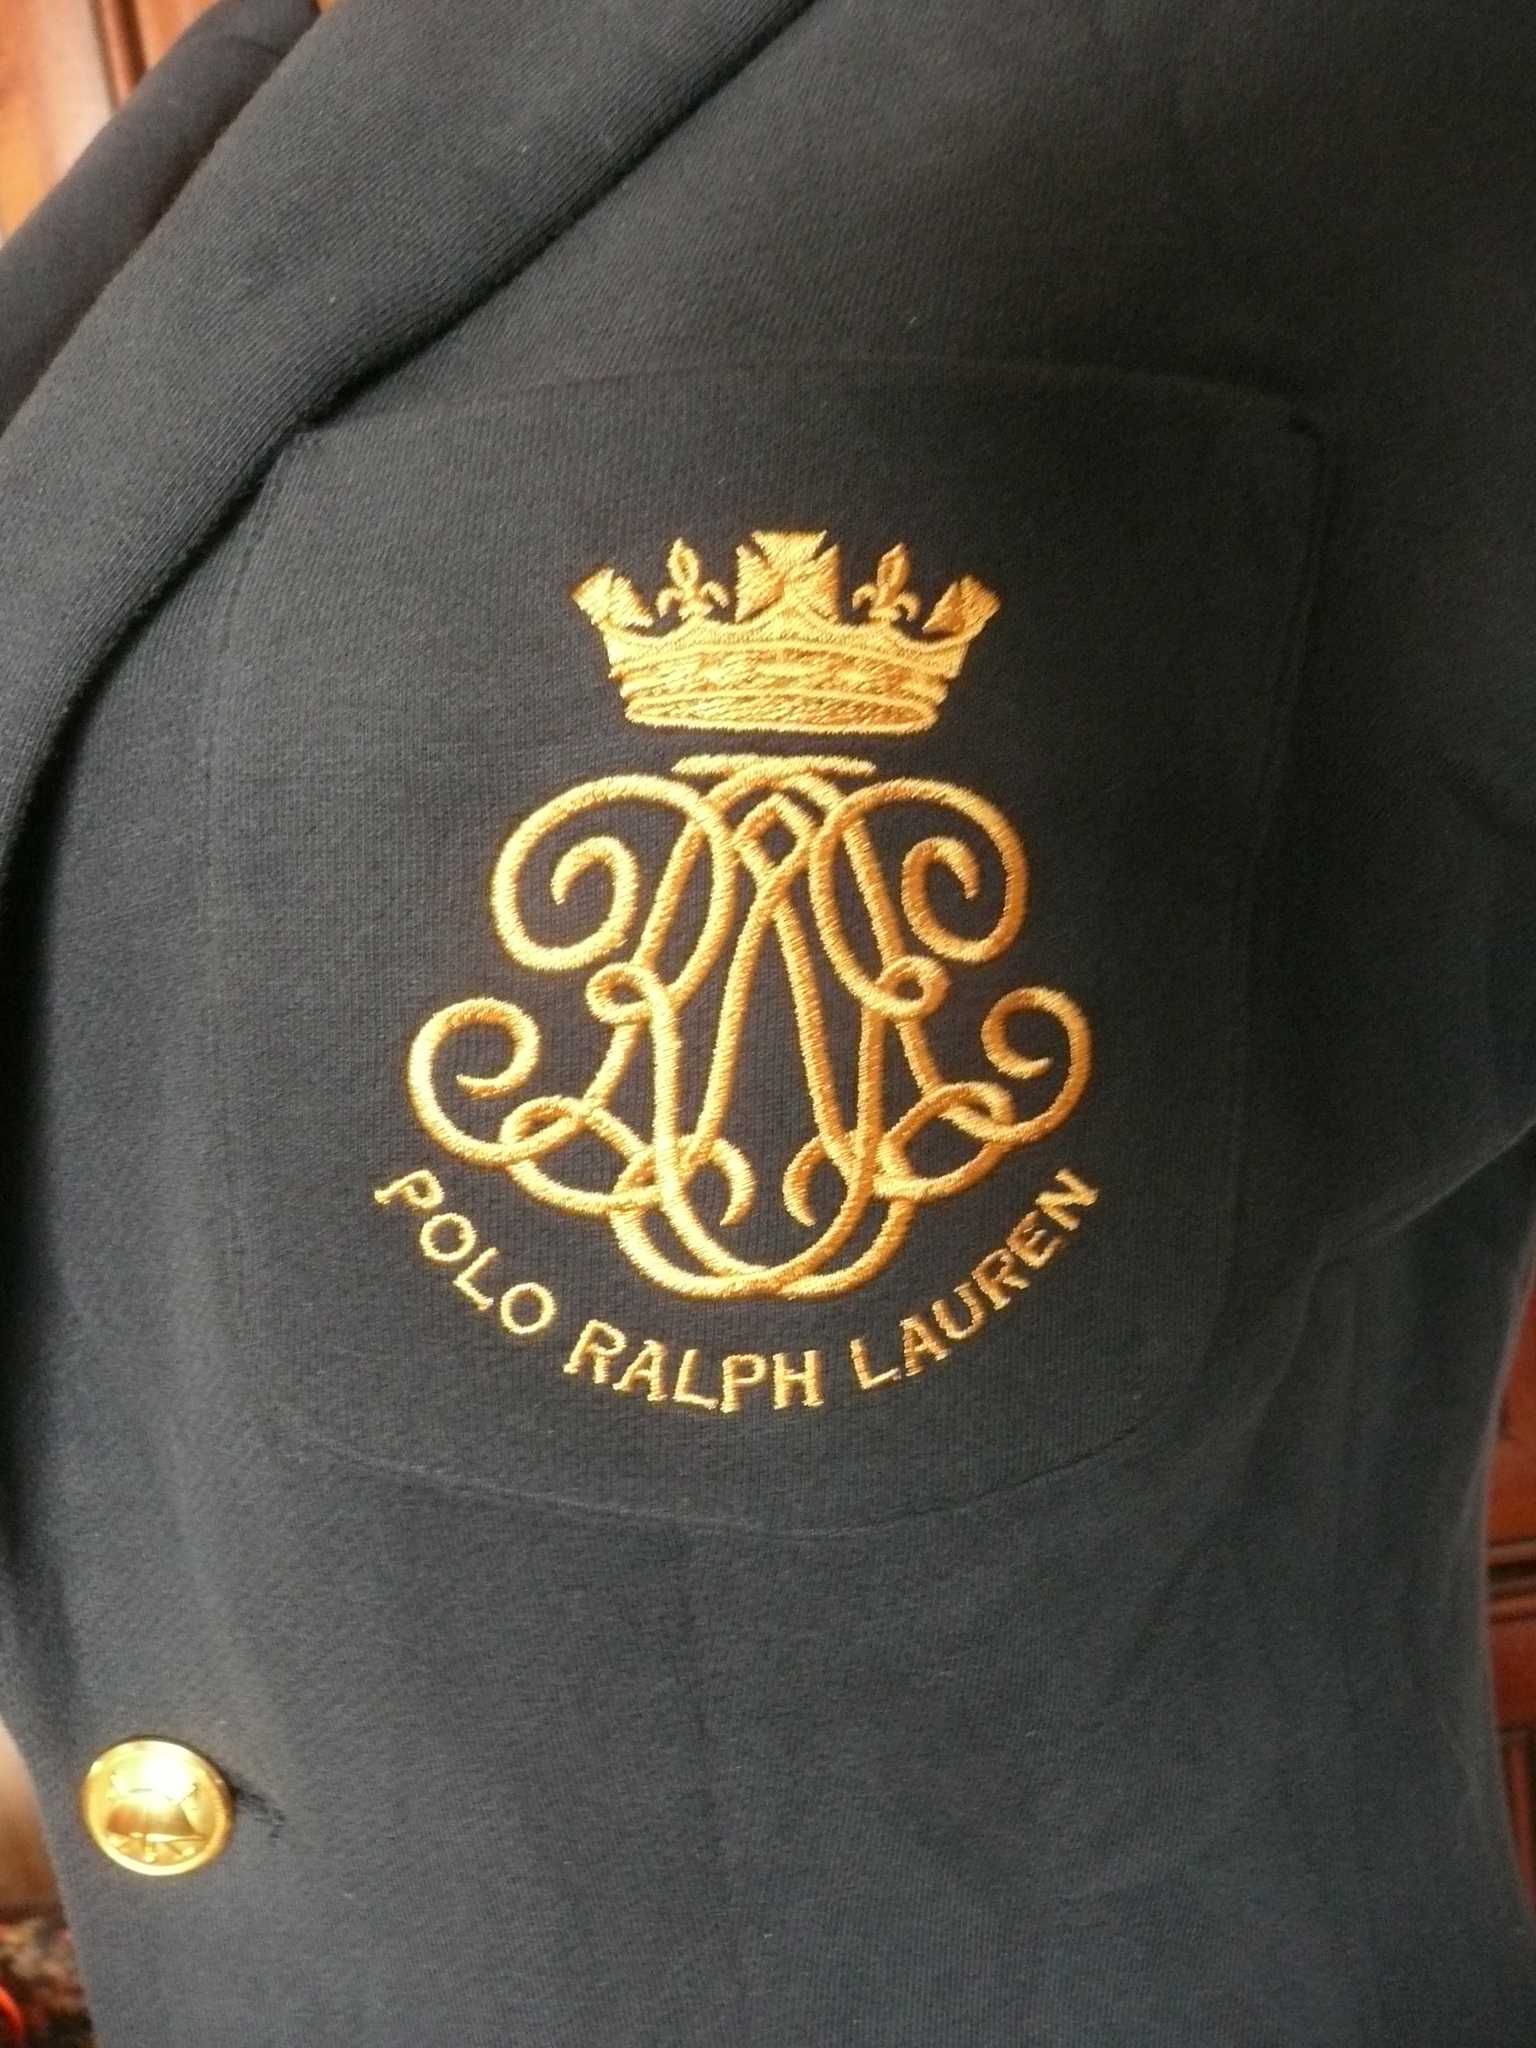 marynarka / żakiet POLO Ralph Lauren 8 złote guziki monogram